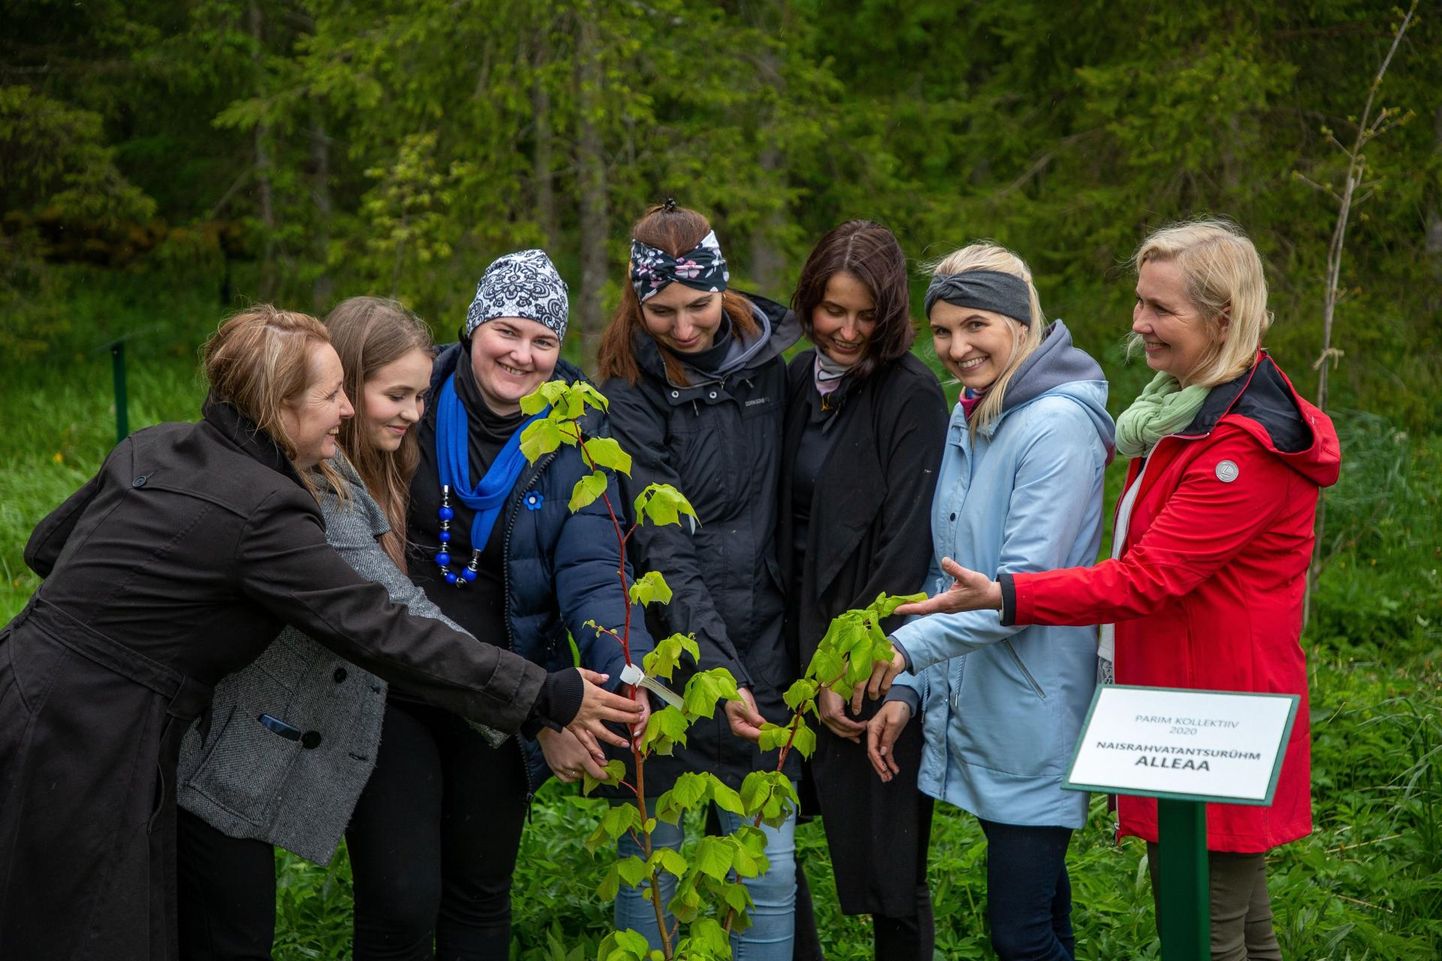 Järvamaa kultuuripreemia laureaadid istutasid hiide oma puud. Parima kollektiivi preemia omistati naisrahvatantsurühmale Alleaa.